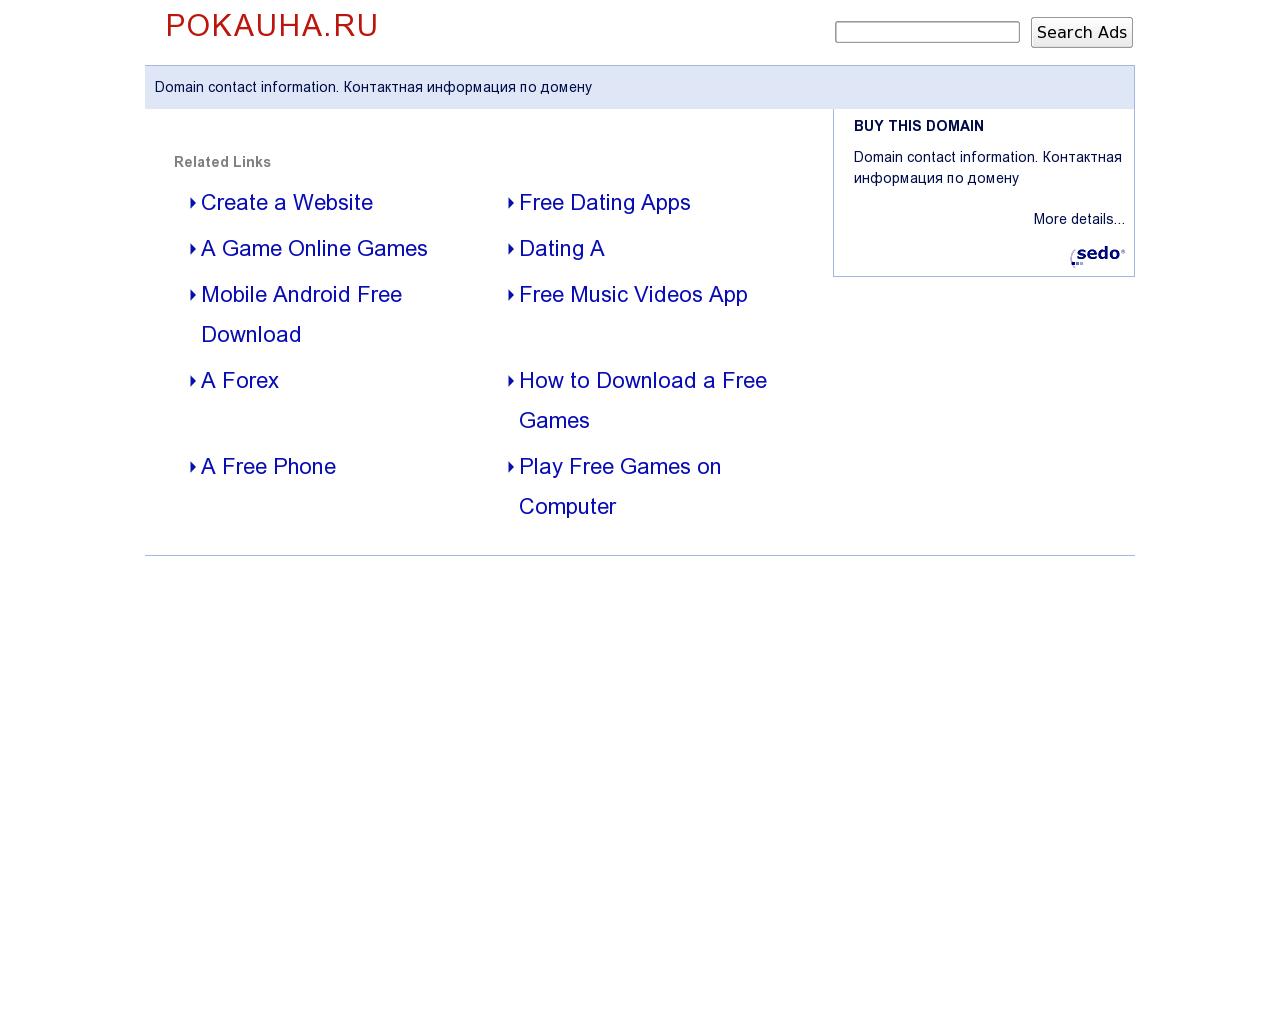 Изображение сайта pokauha.ru в разрешении 1280x1024